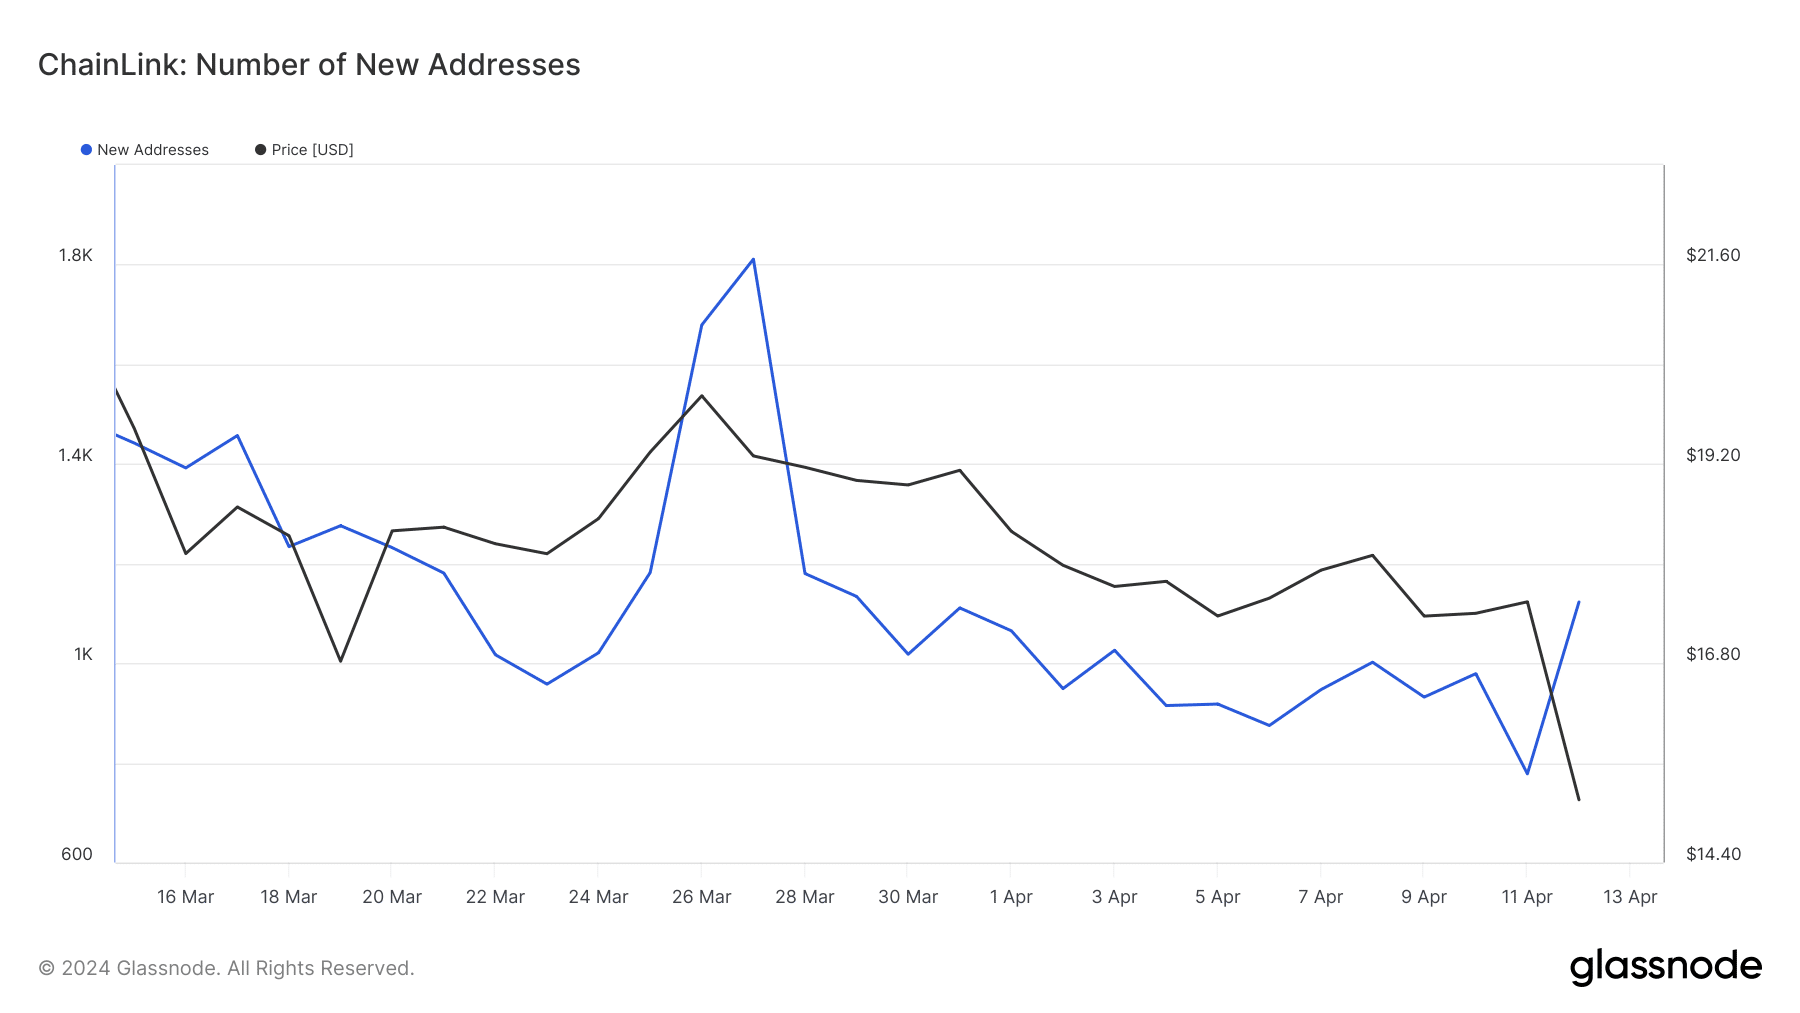 Podaci koji pokazuju porast LINK adresa